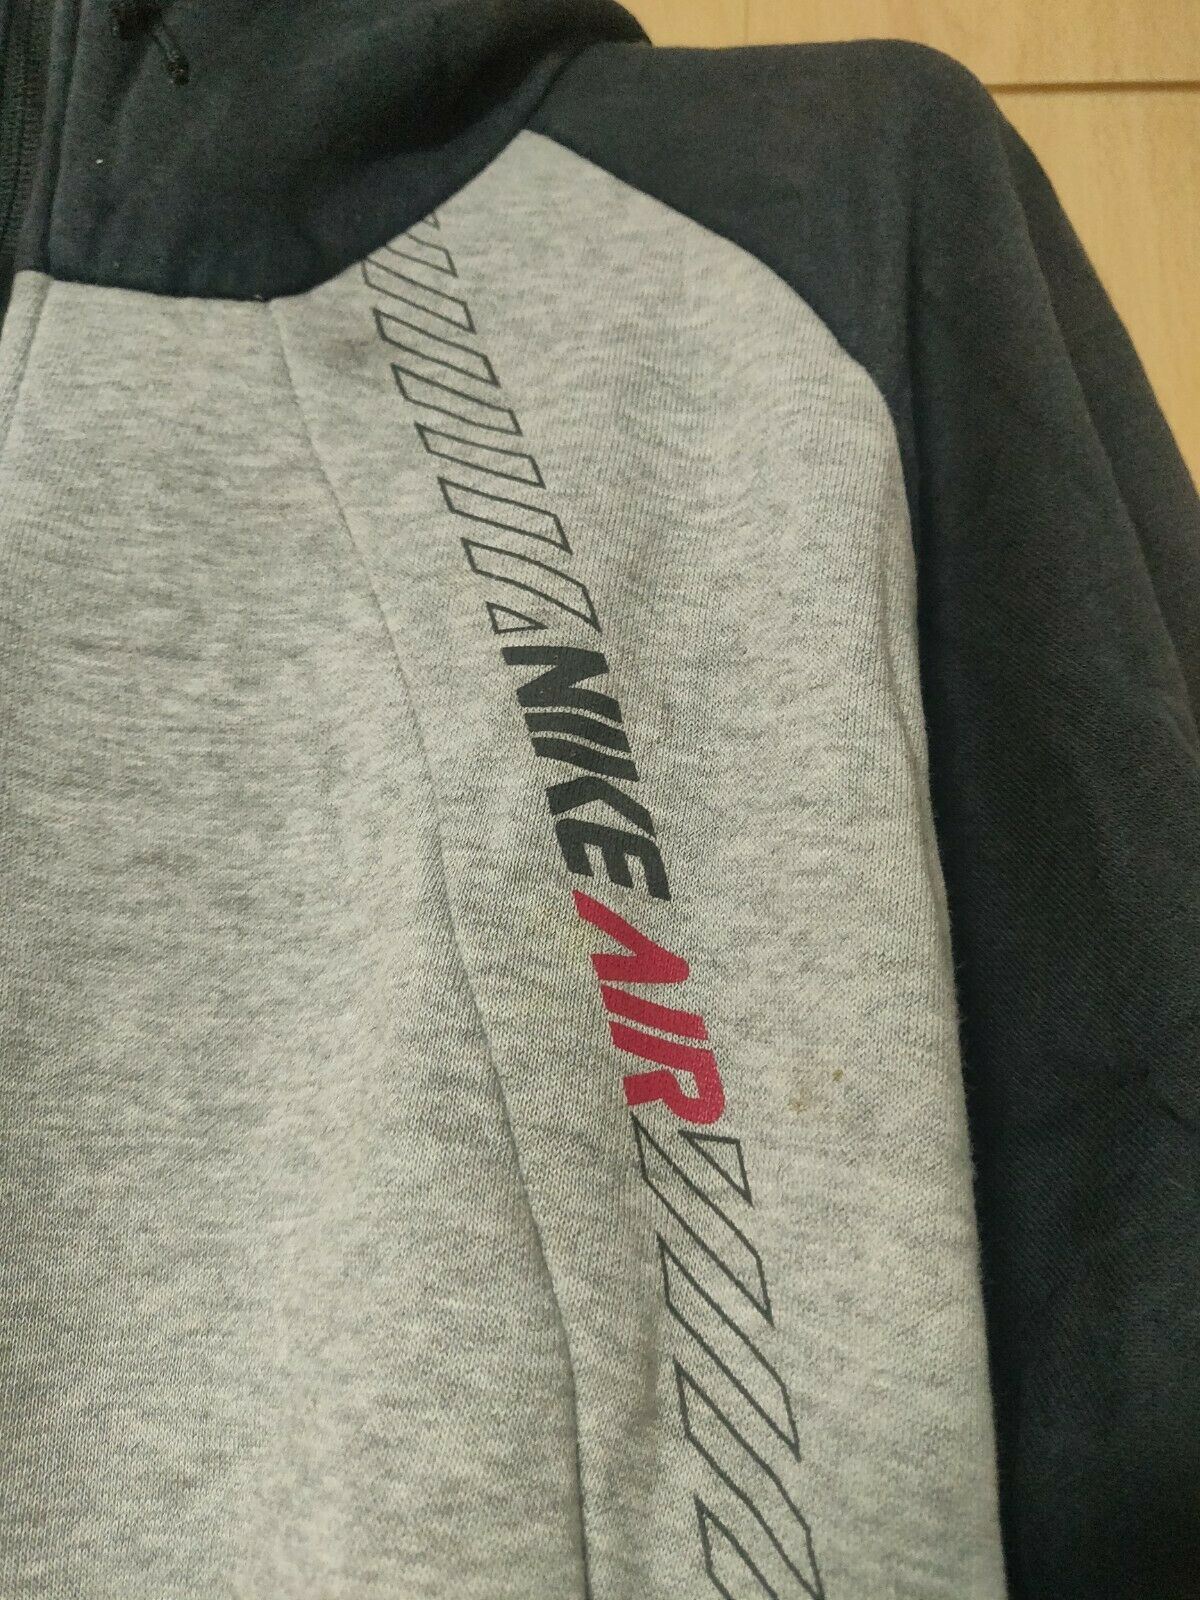 Nike Air Grey Vintage Half-Zip Pullover Hoodie Men Size Medium UK 38/40